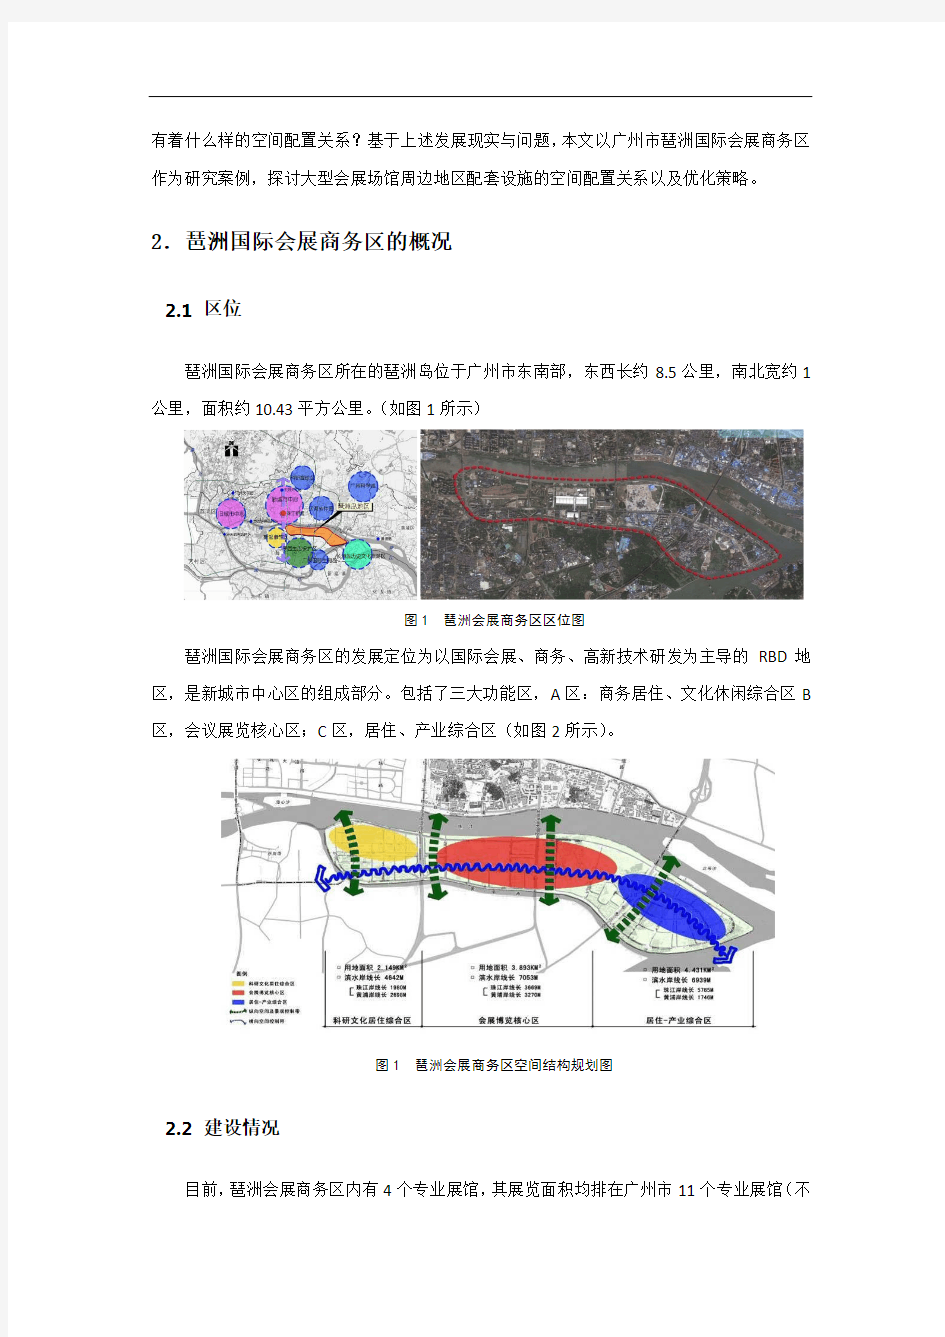 大型展馆周边地区配套设施空间配置探讨——以广州琶洲国际会展商务区为例